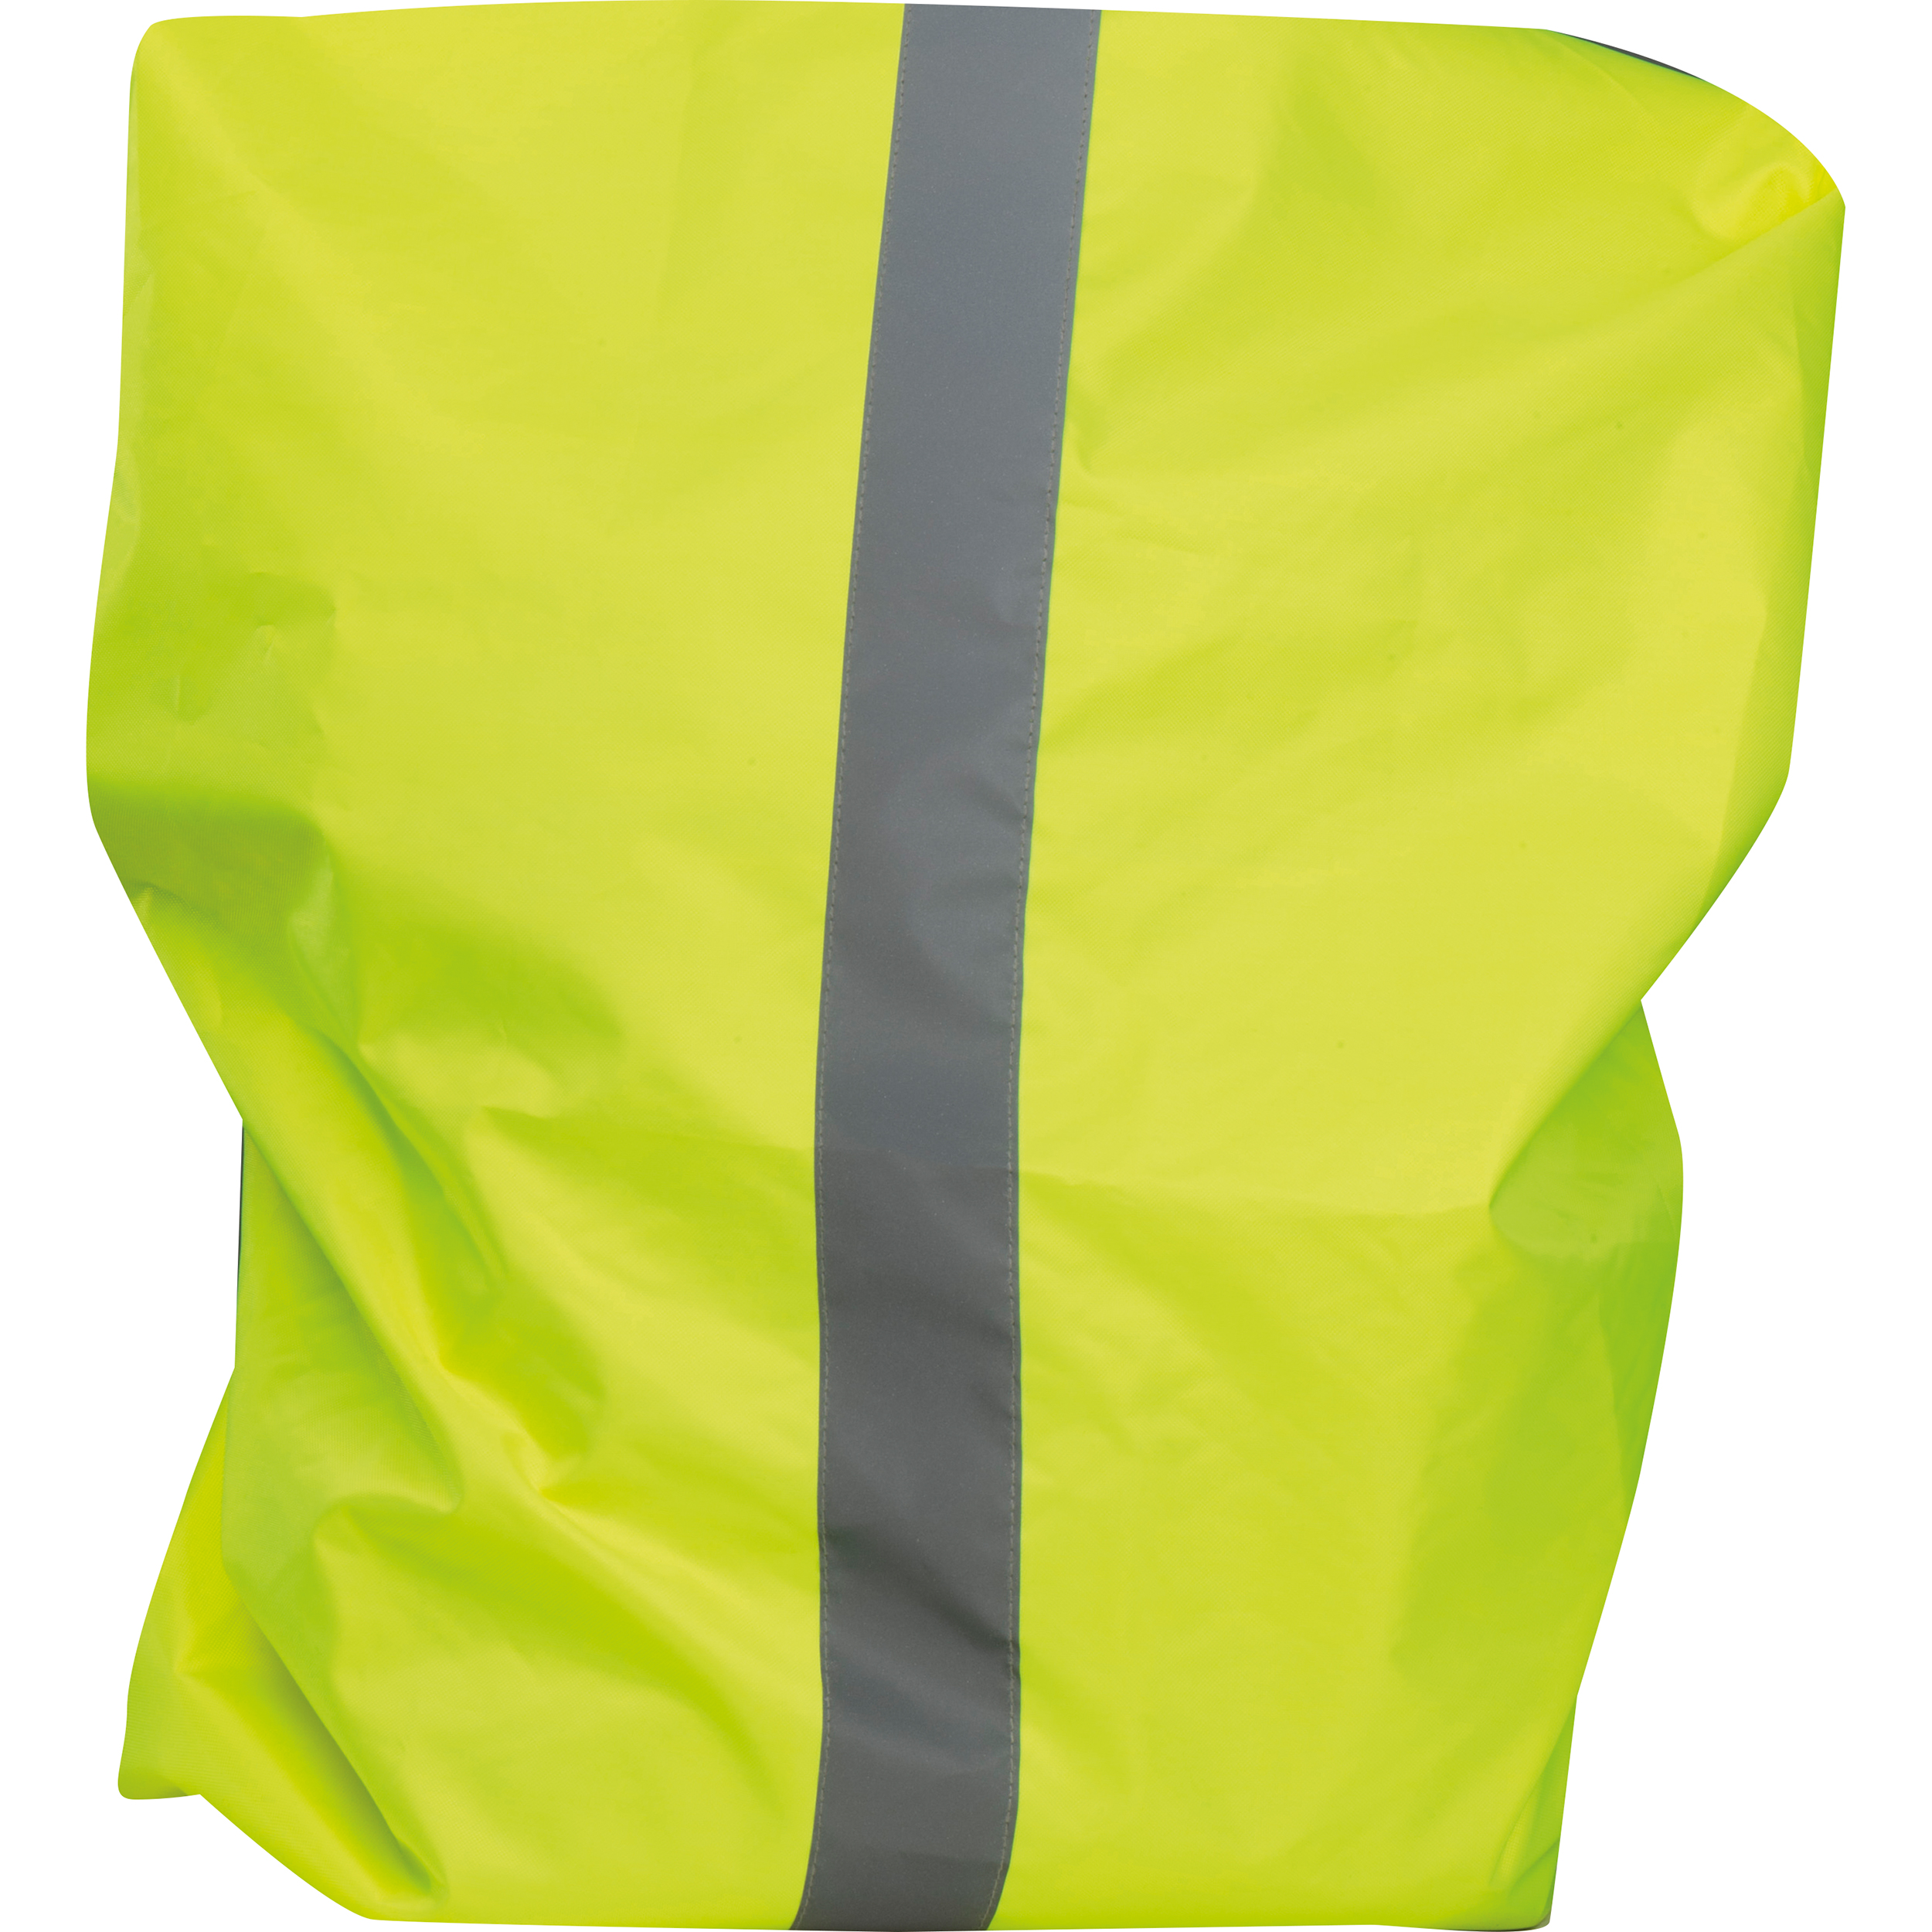 Regenschutz für Rucksäcke mit Reflektorstreifen und Zugband